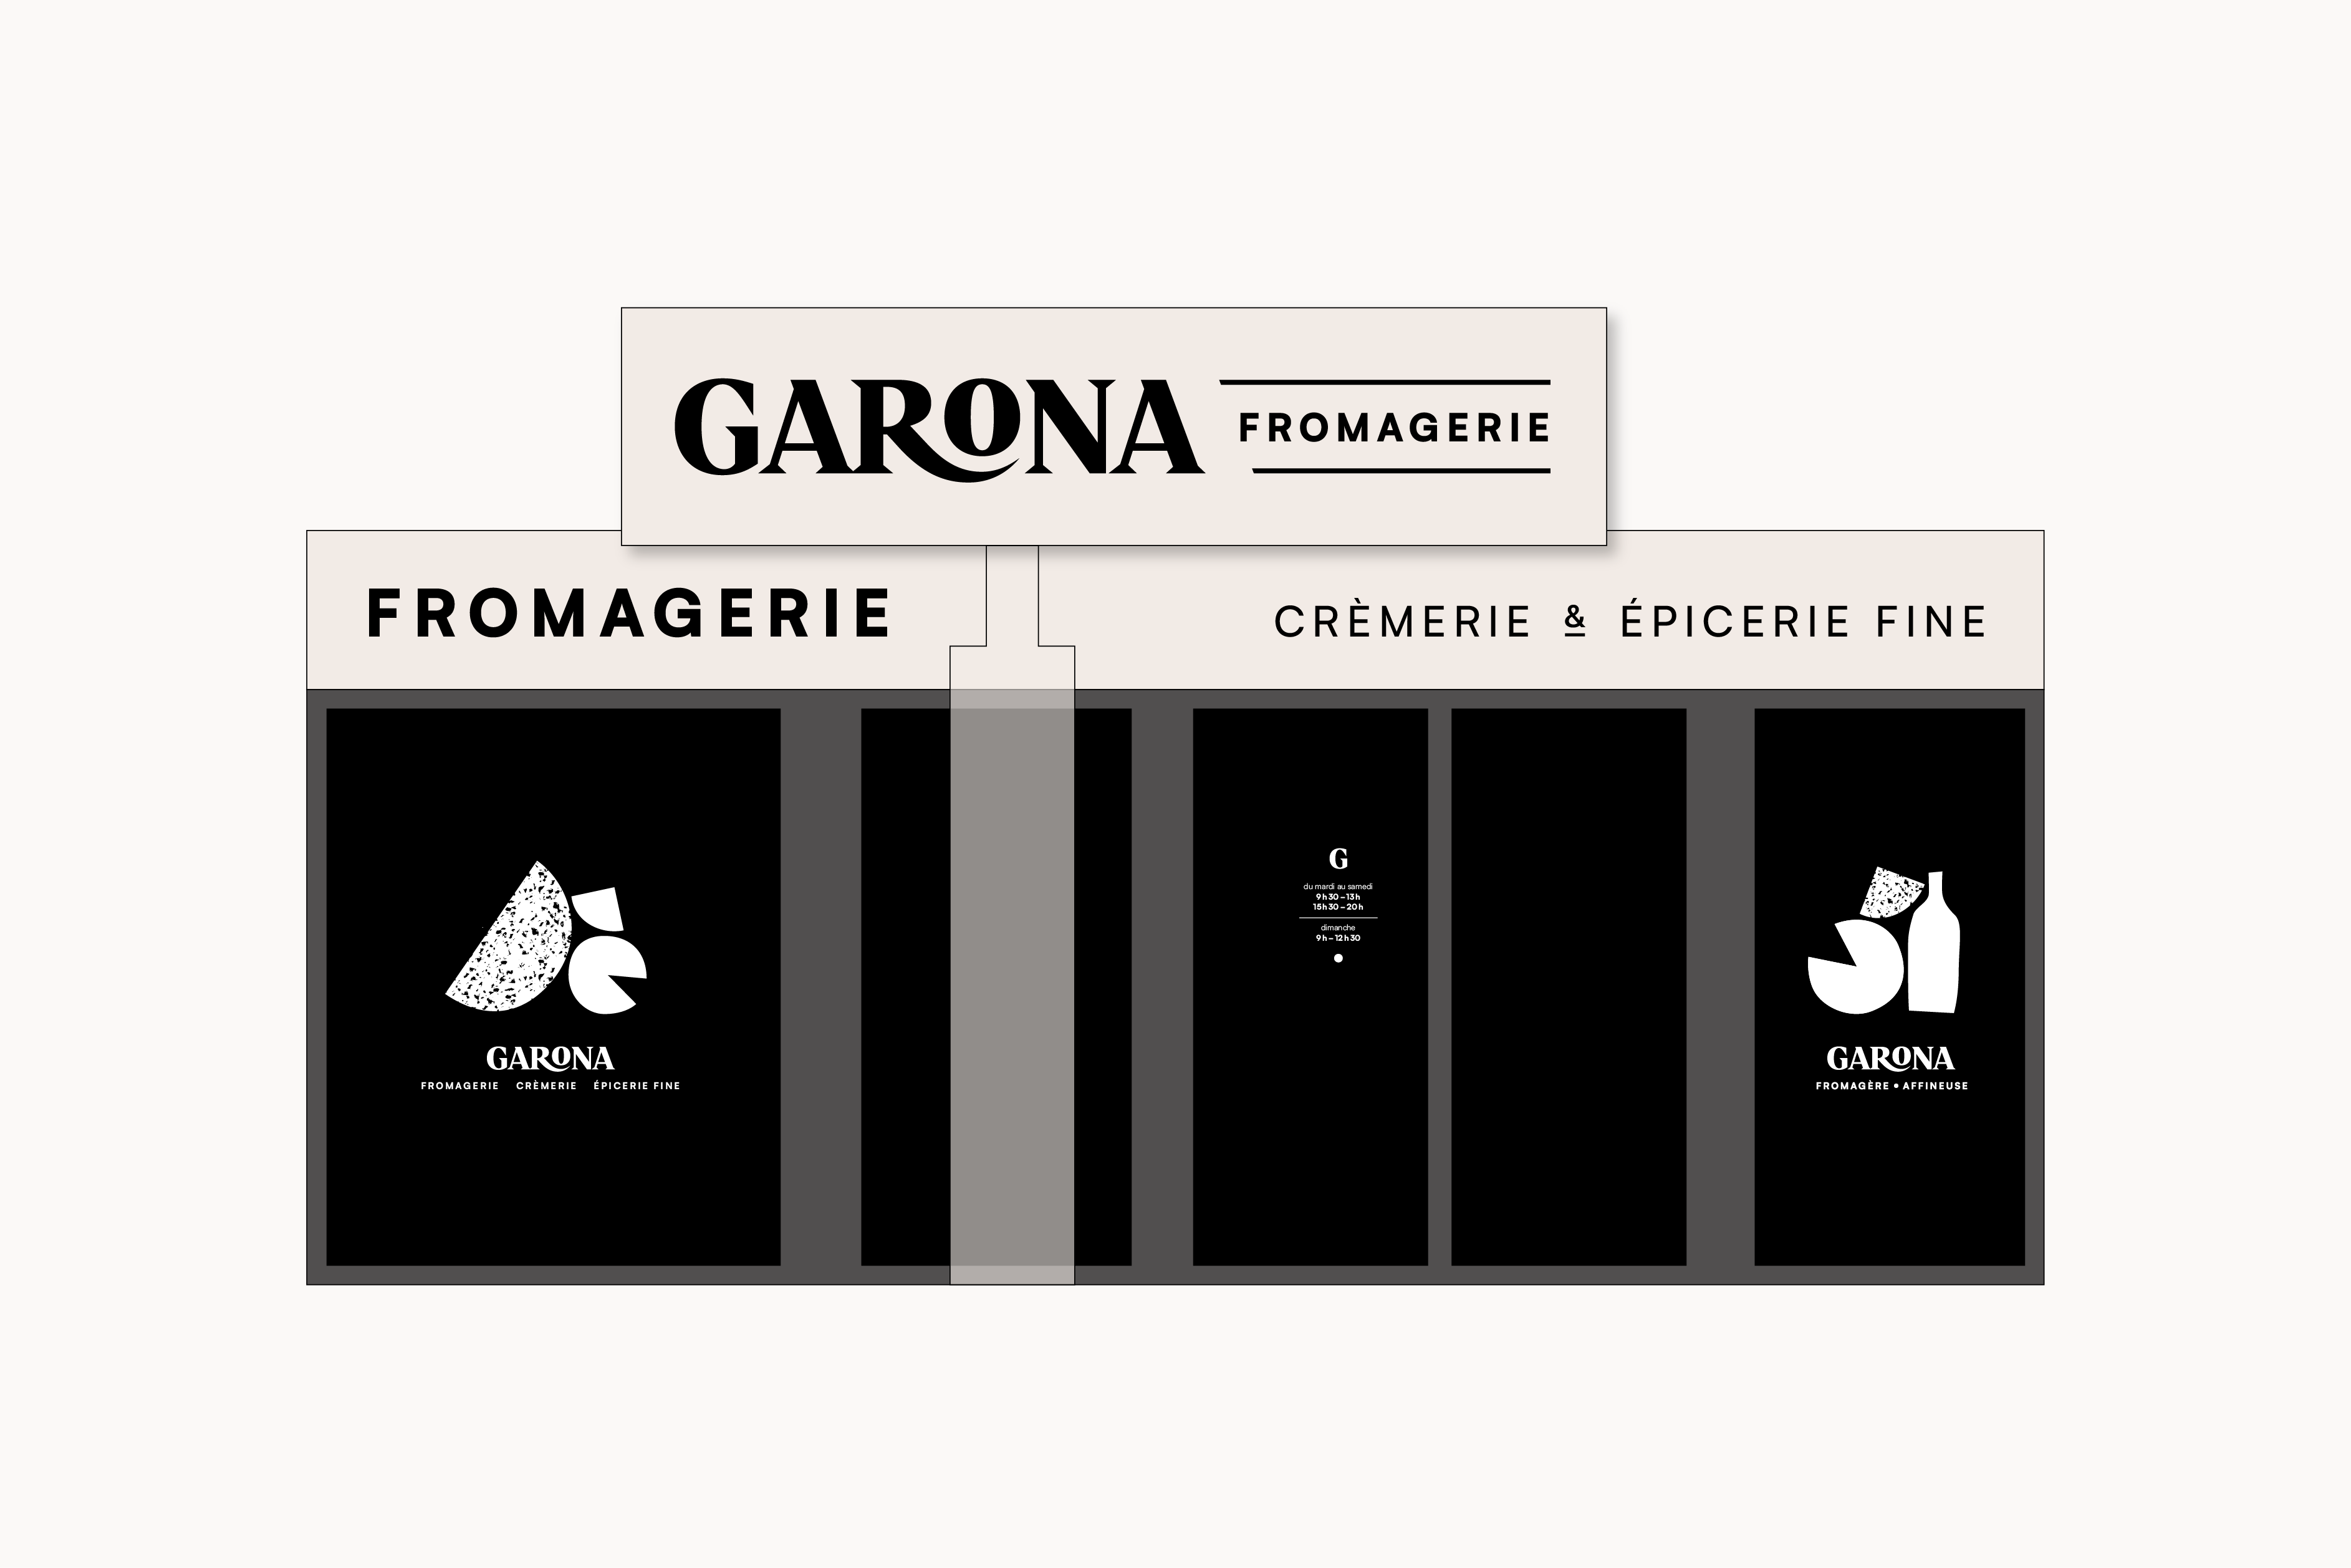 Schéma de la devanture réalisée pour la fromagerie Garona